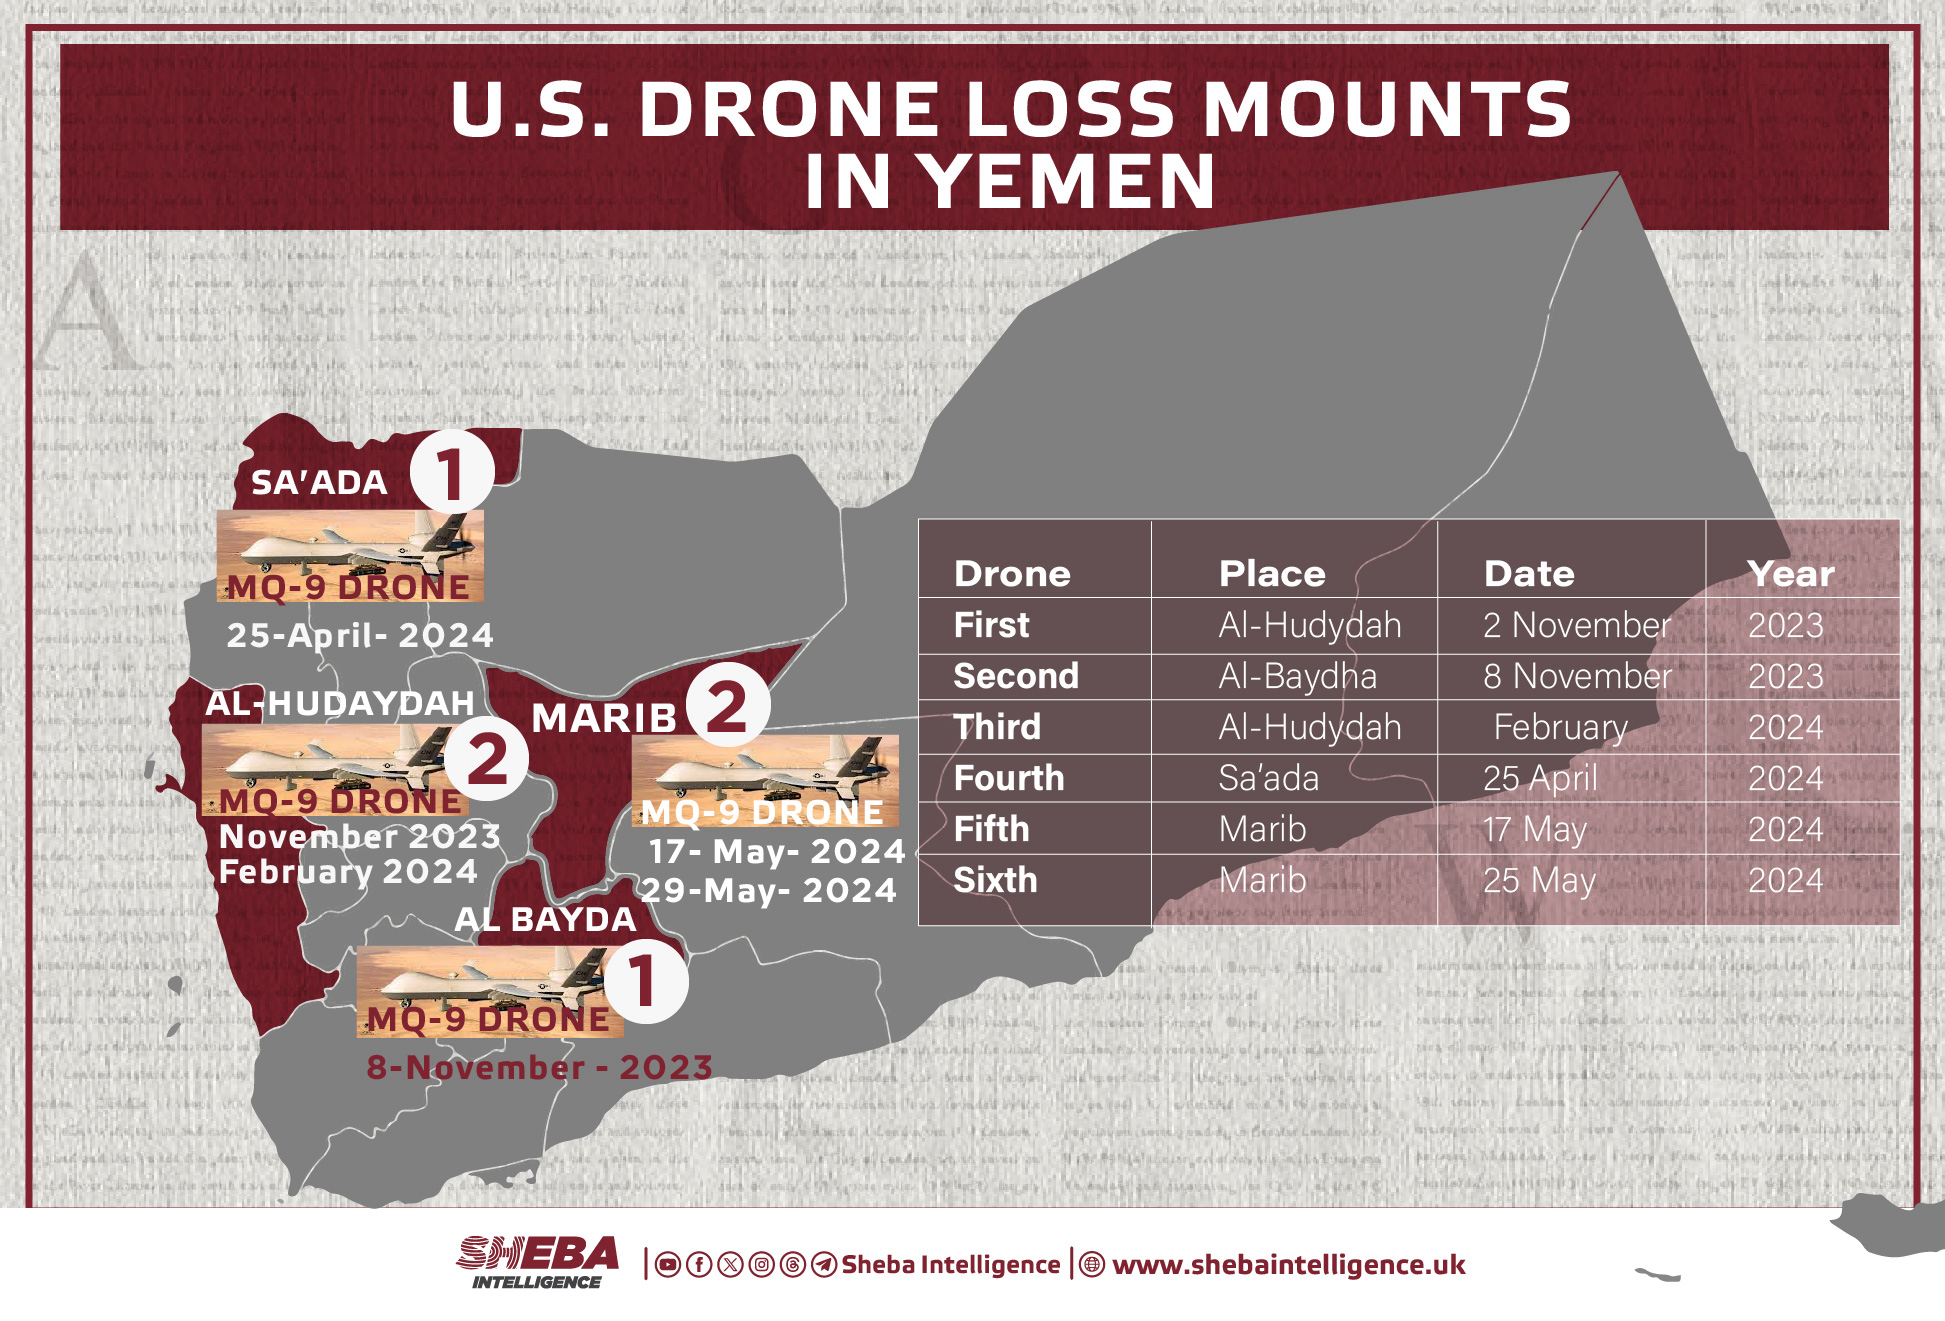 U.S. Drone Loss Mounts in Yemen